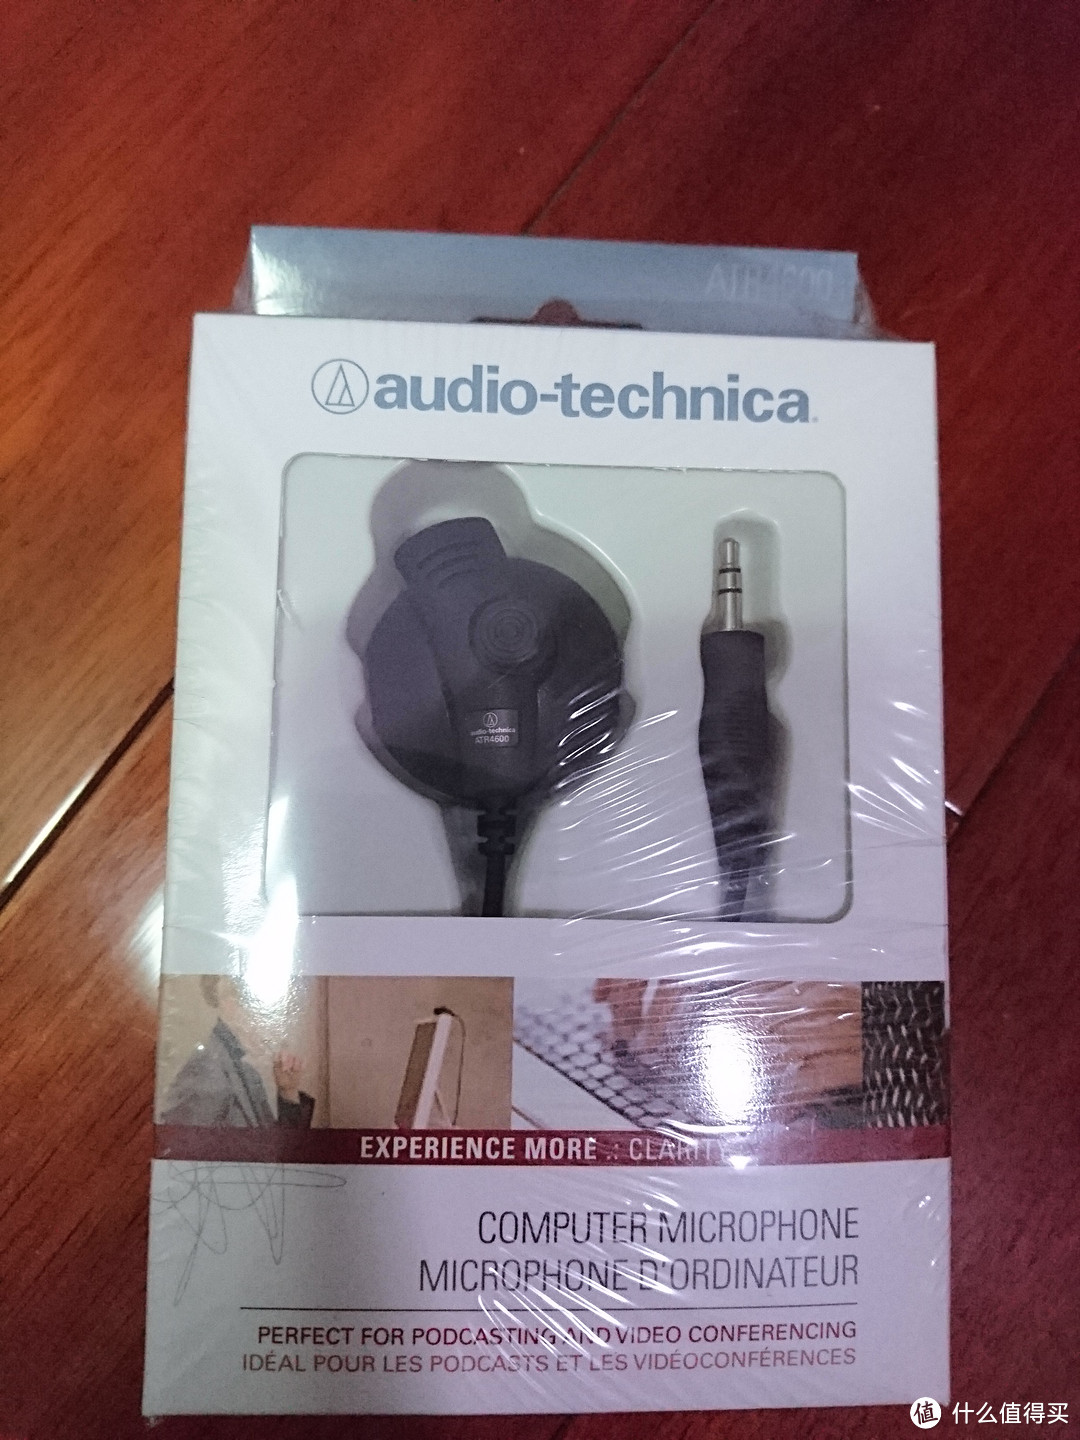 来自LD的生日礼物——Audio-technica 铁三角 M50X墨绿色开箱